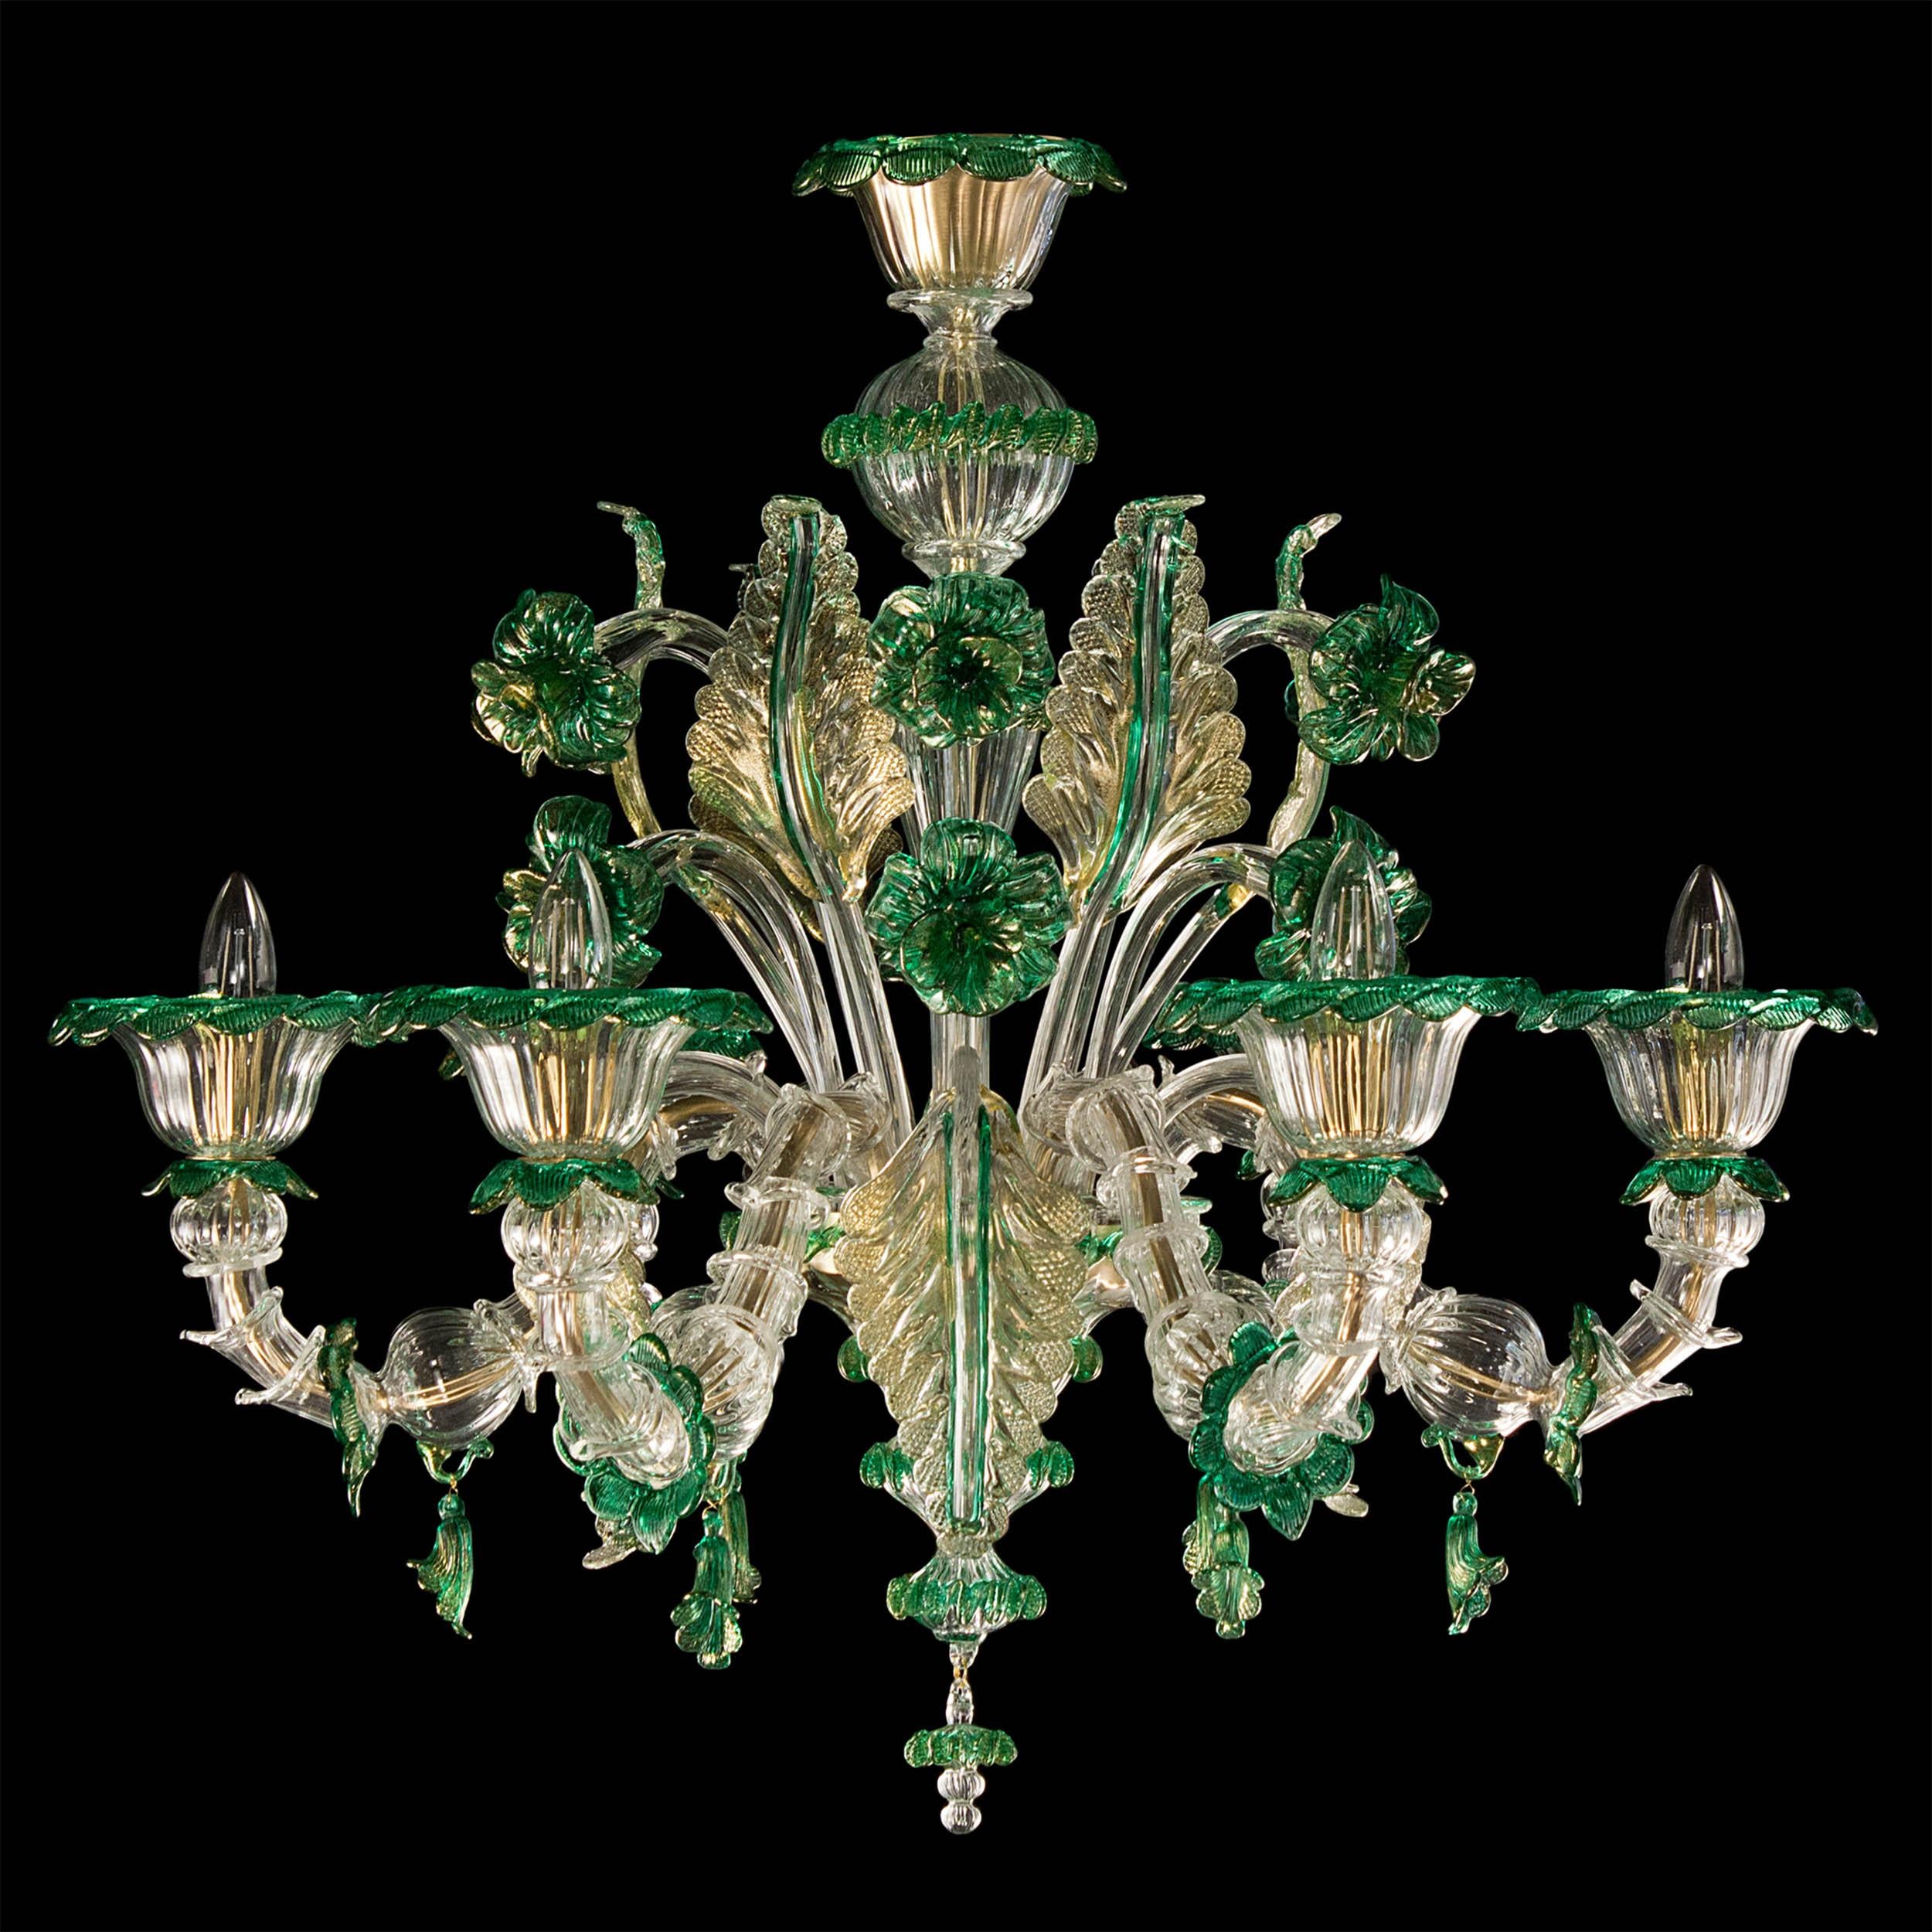 Reichhaltiger 6-armiger Rezzonico-Kronleuchter aus klarem, gold-grünem Muranoglas, doppelte Blütenebene von Multiforme
Dieser Kronleuchter erinnert an die Pracht vergangener Jahrhunderte. Es handelt sich um ein immergrünes Modell, ein klassisches